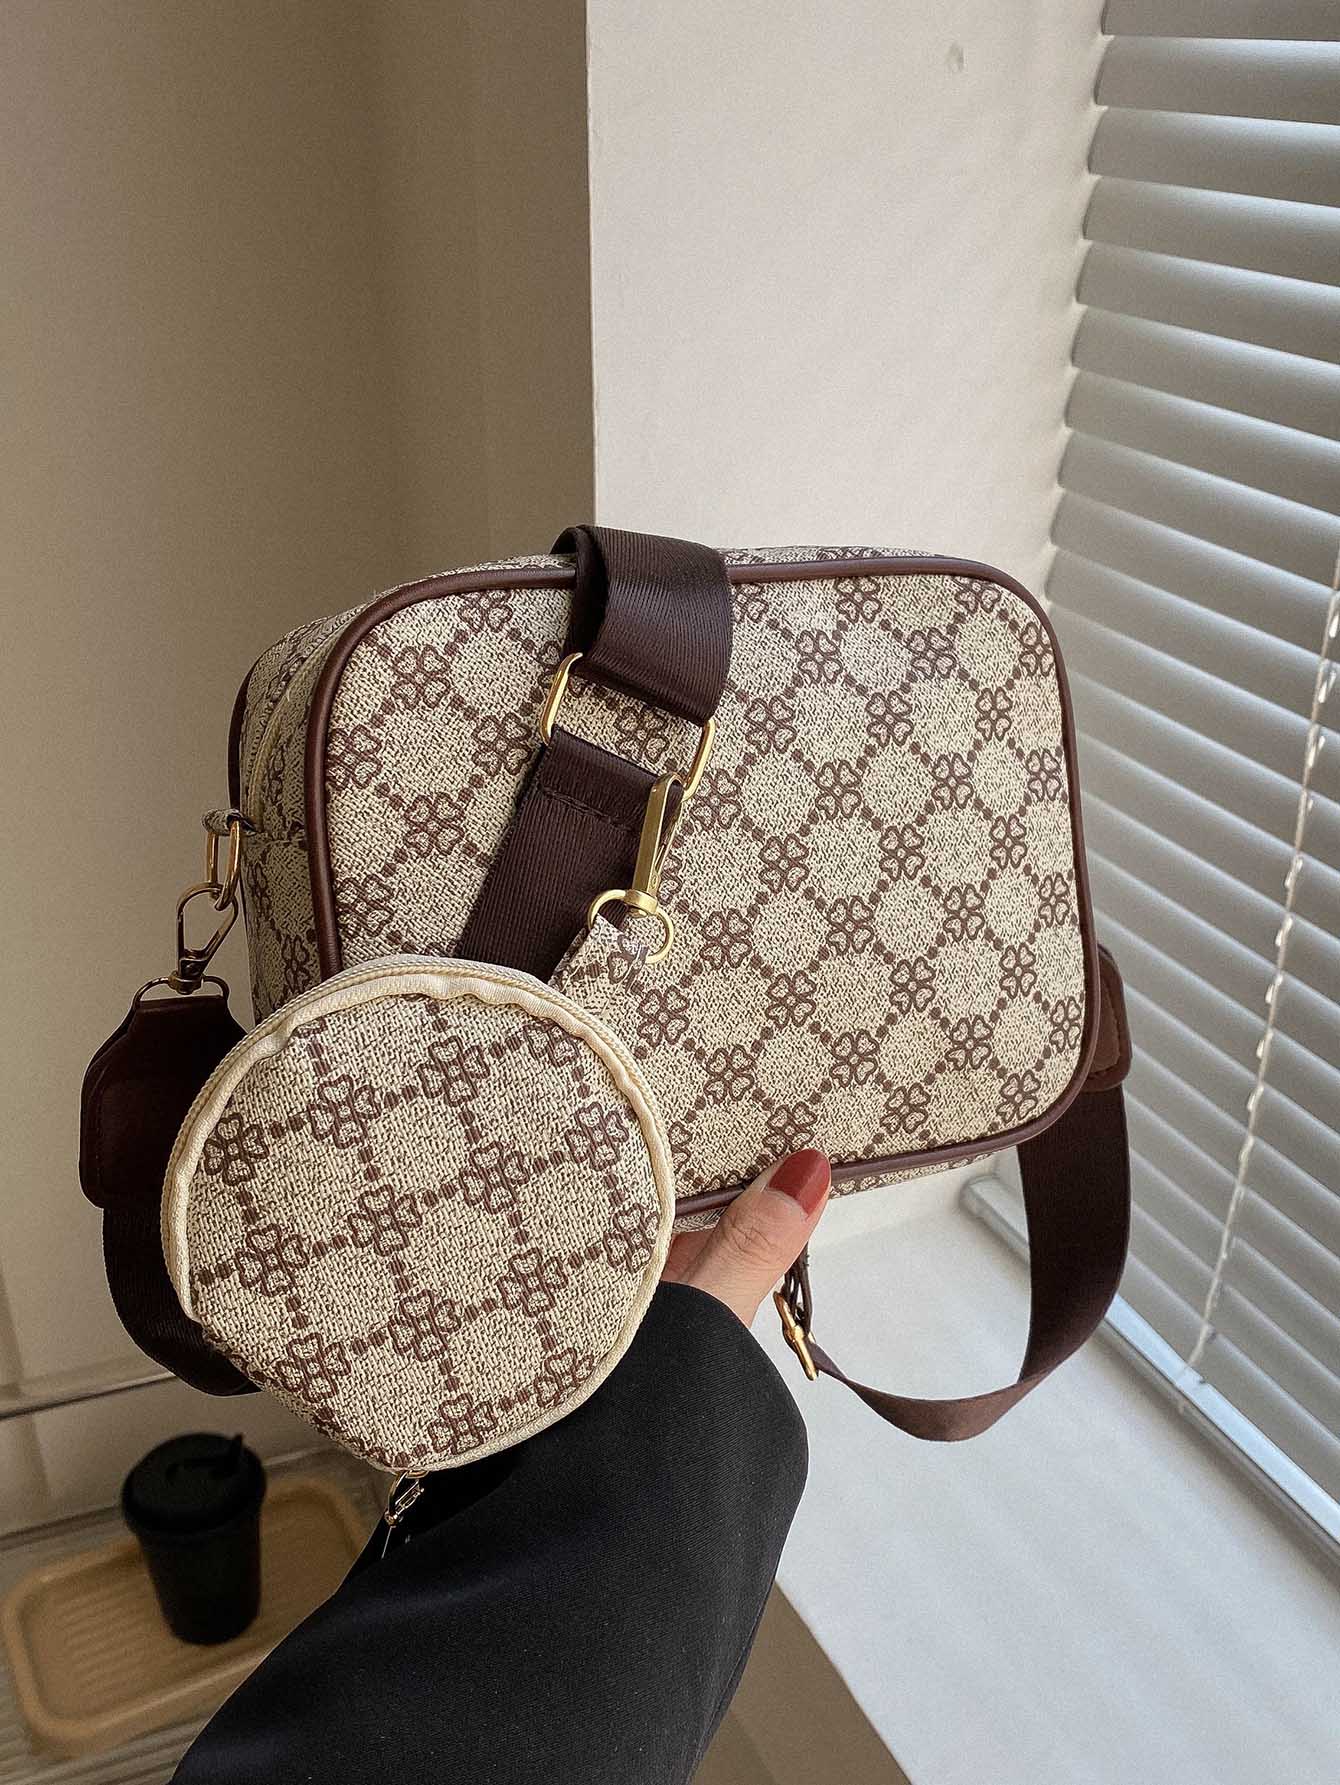 Мини-квадратная сумка с геометрическим узором и портмоне для монет Квадратная сумка в стиле ретро, хаки